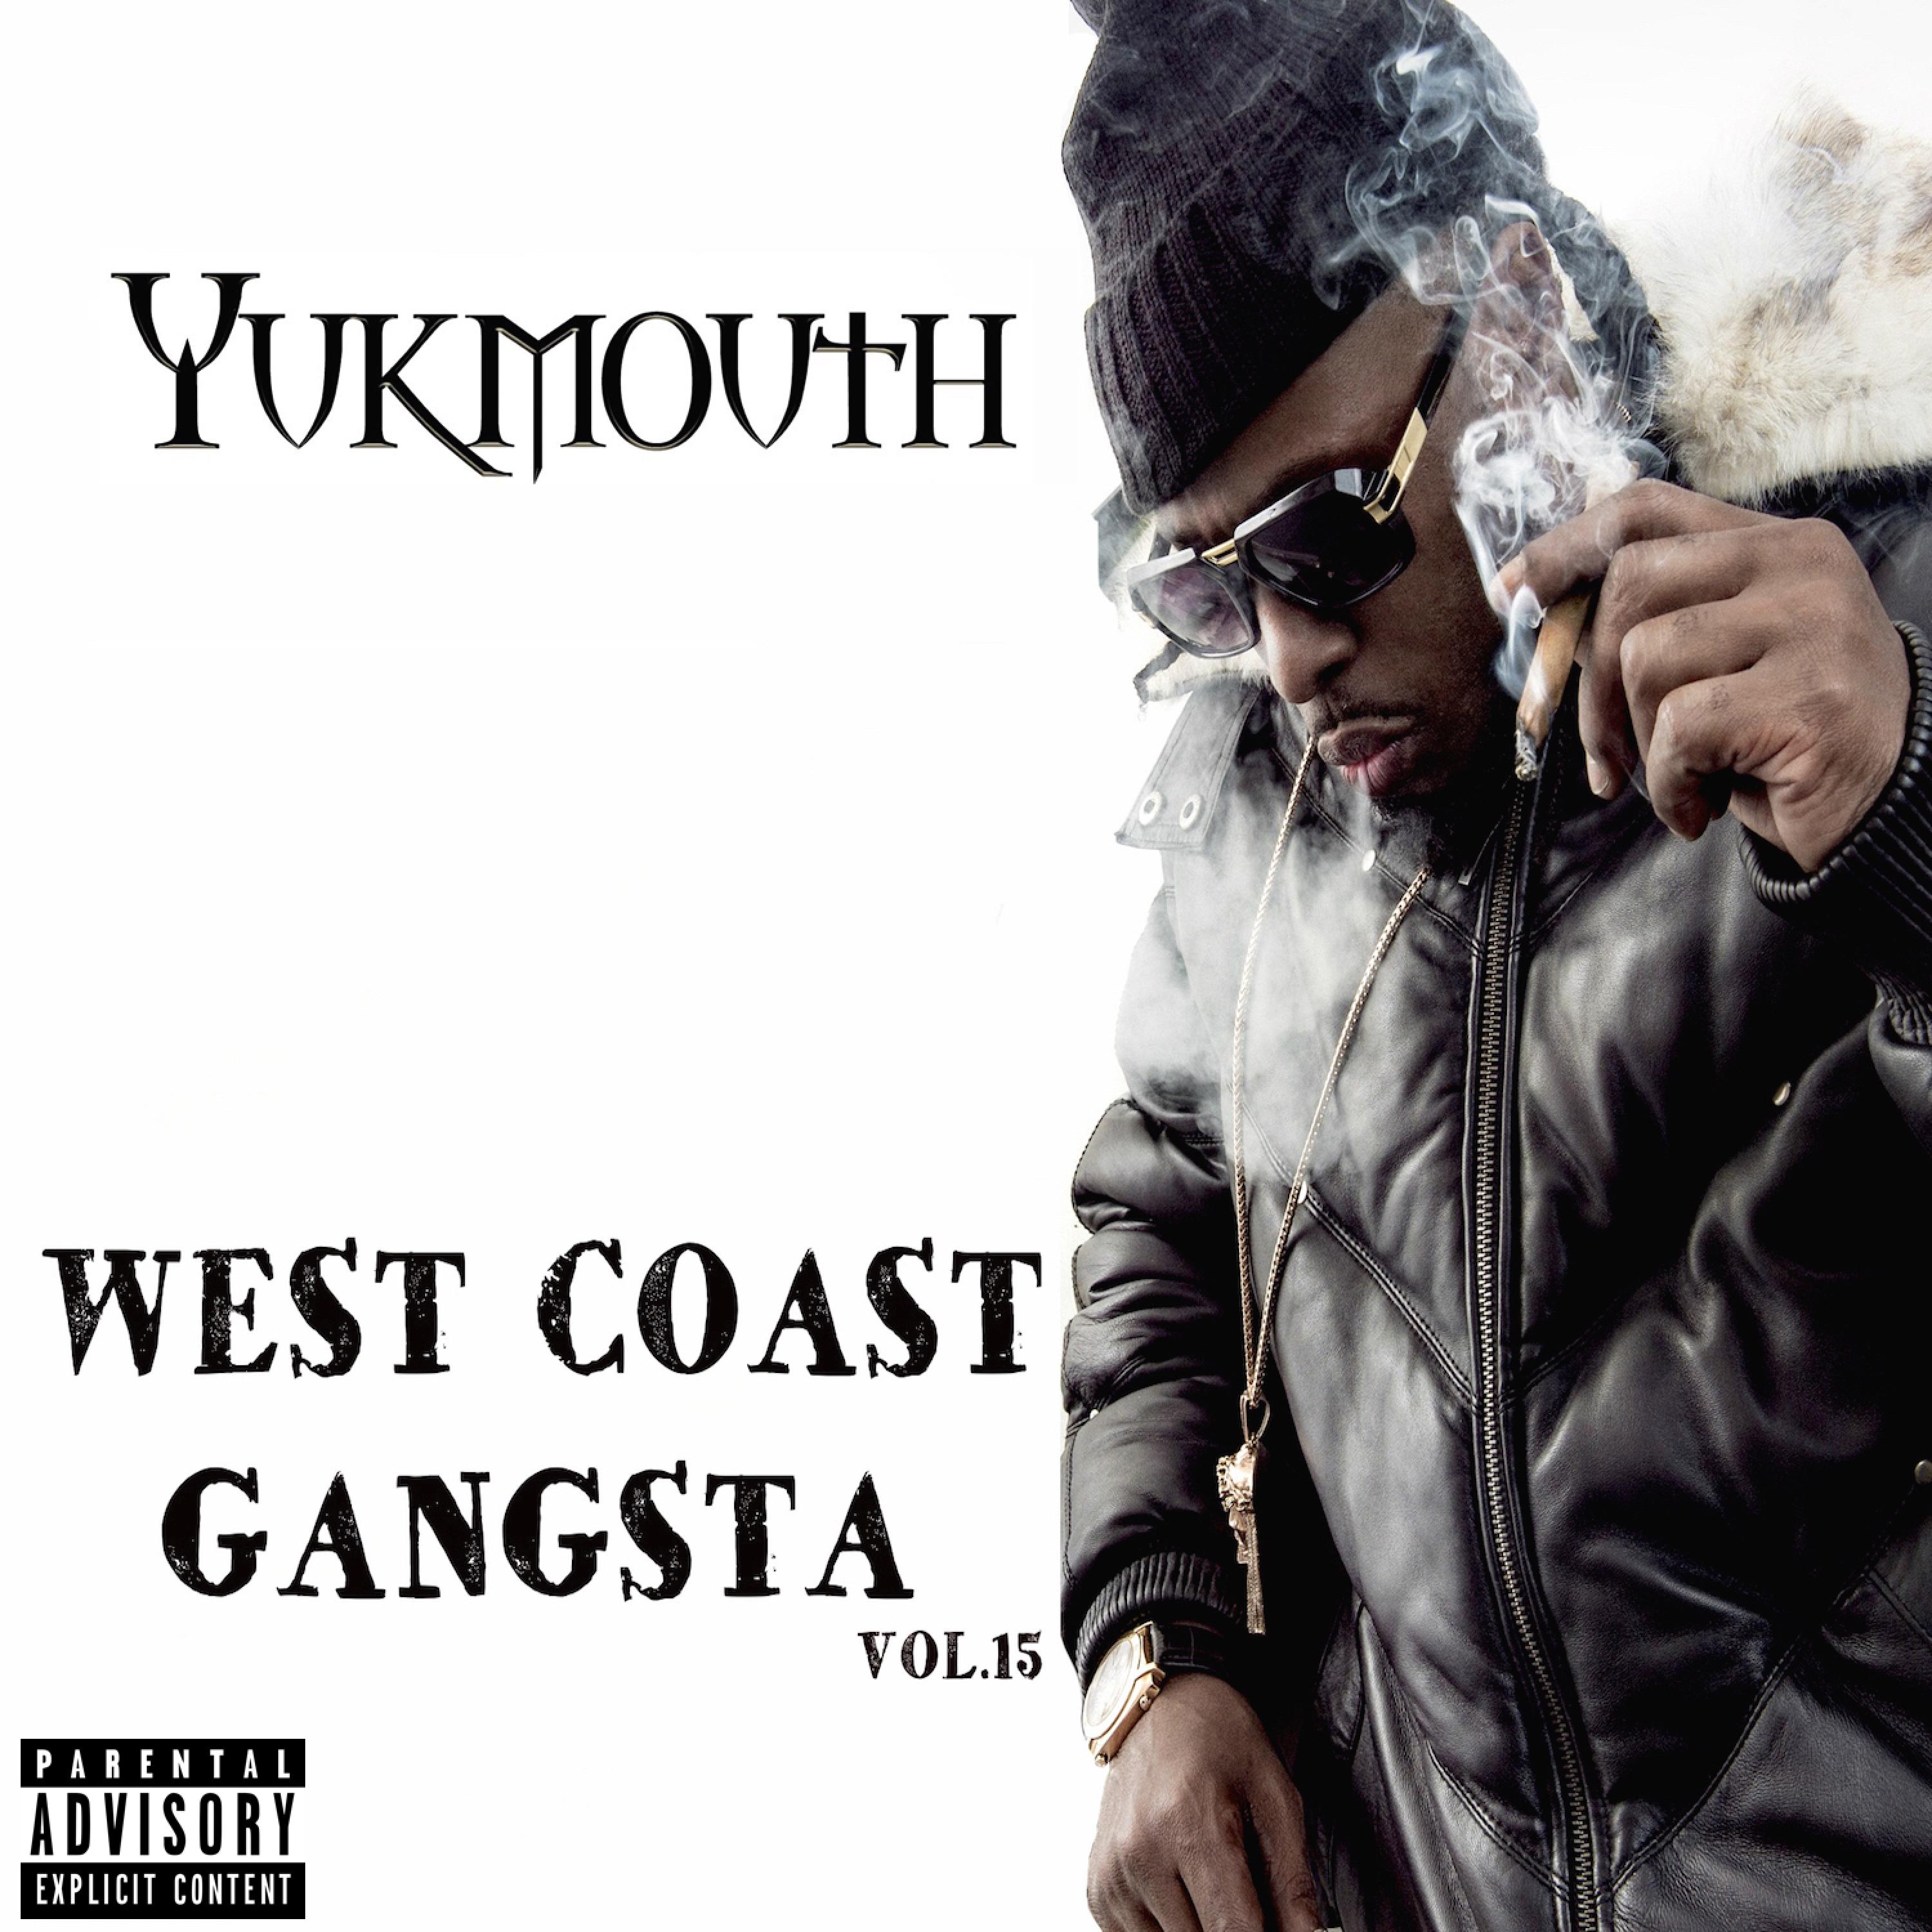 West Coast Gangsta, Vol. 15